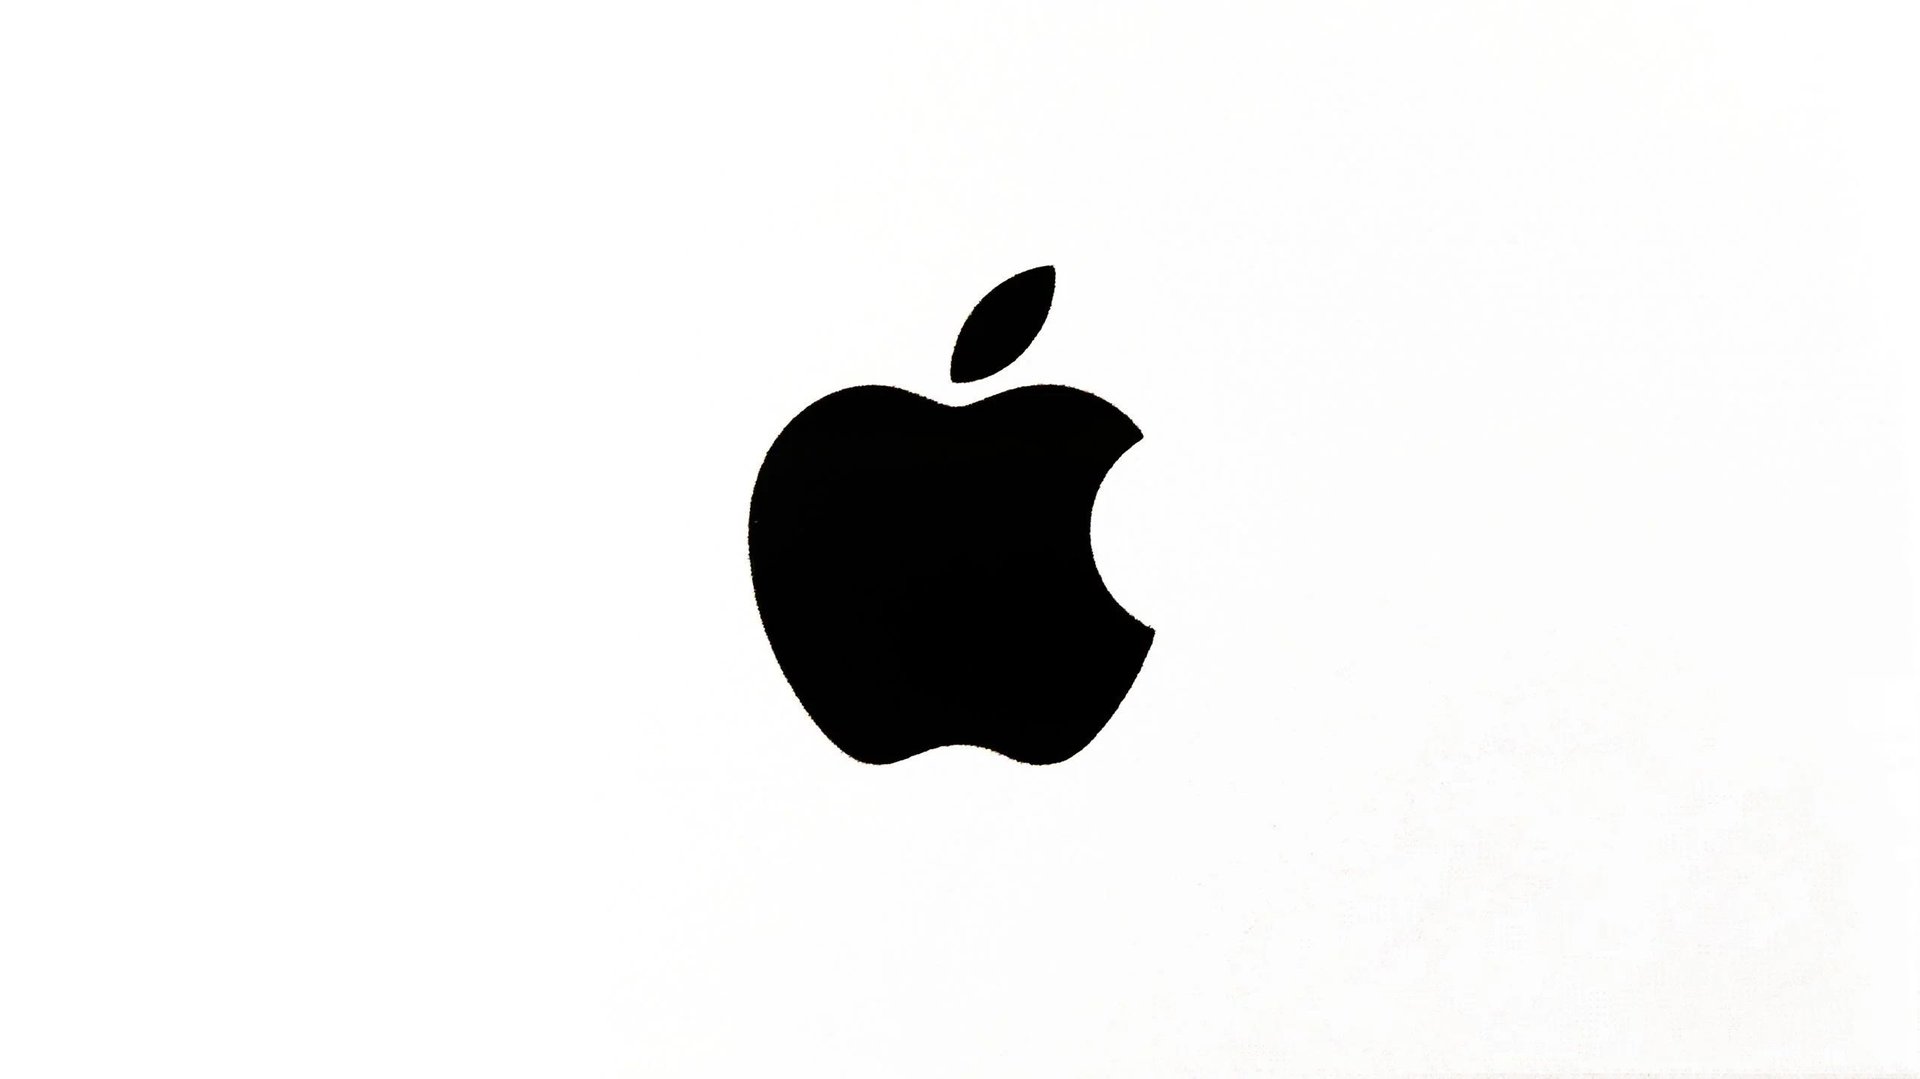 Czarne logo Apple na białym tle